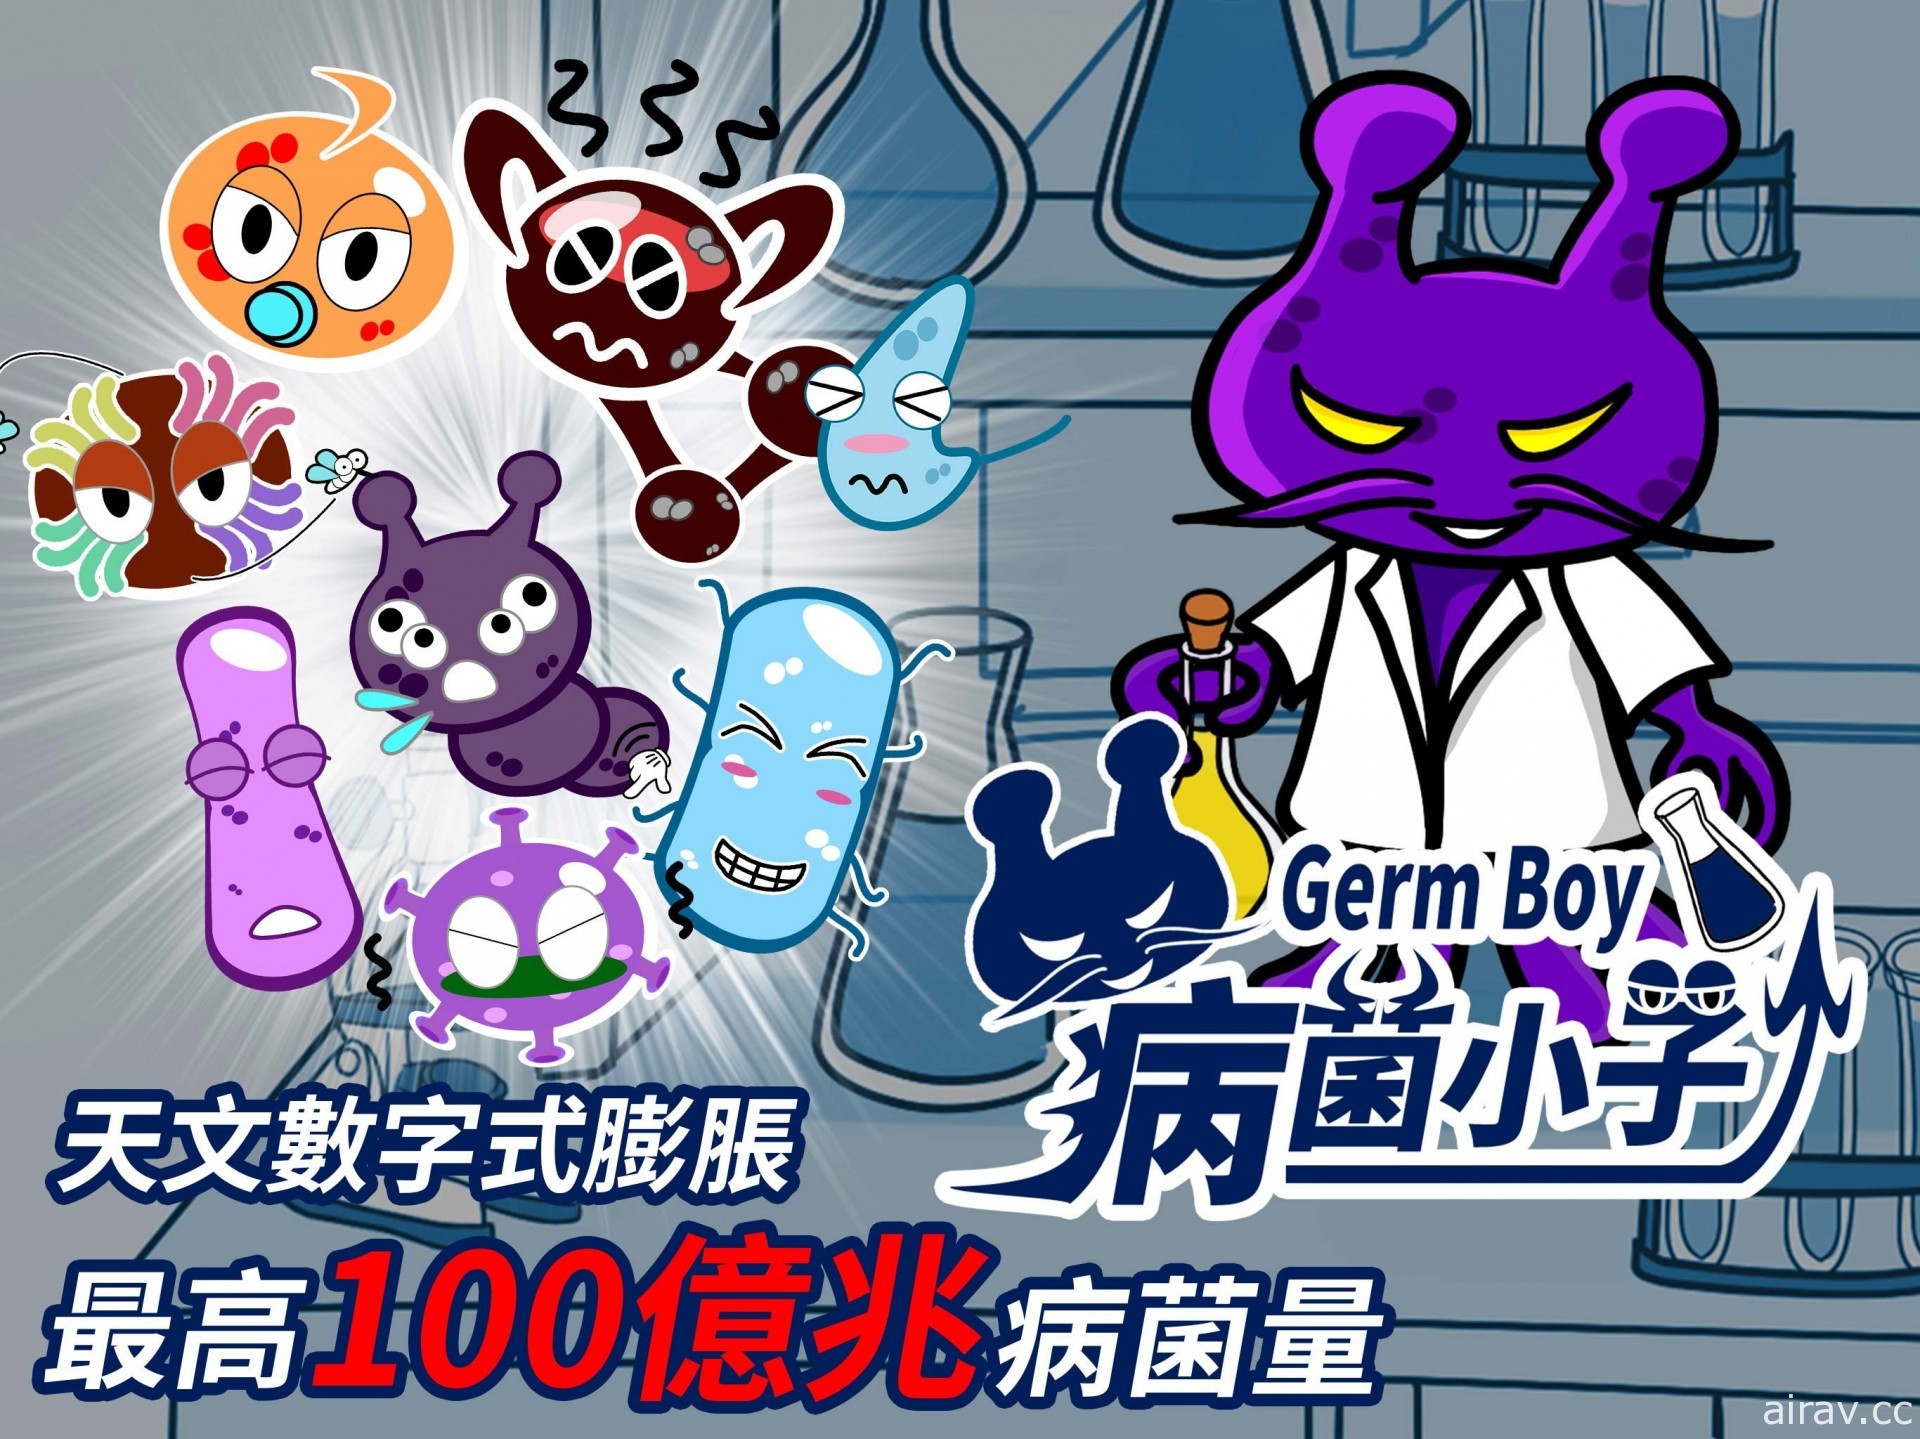 天文数字式膨胀游戏《GermBoy 病菌小子》GooglePlay 上架 最高 100 亿兆病菌量